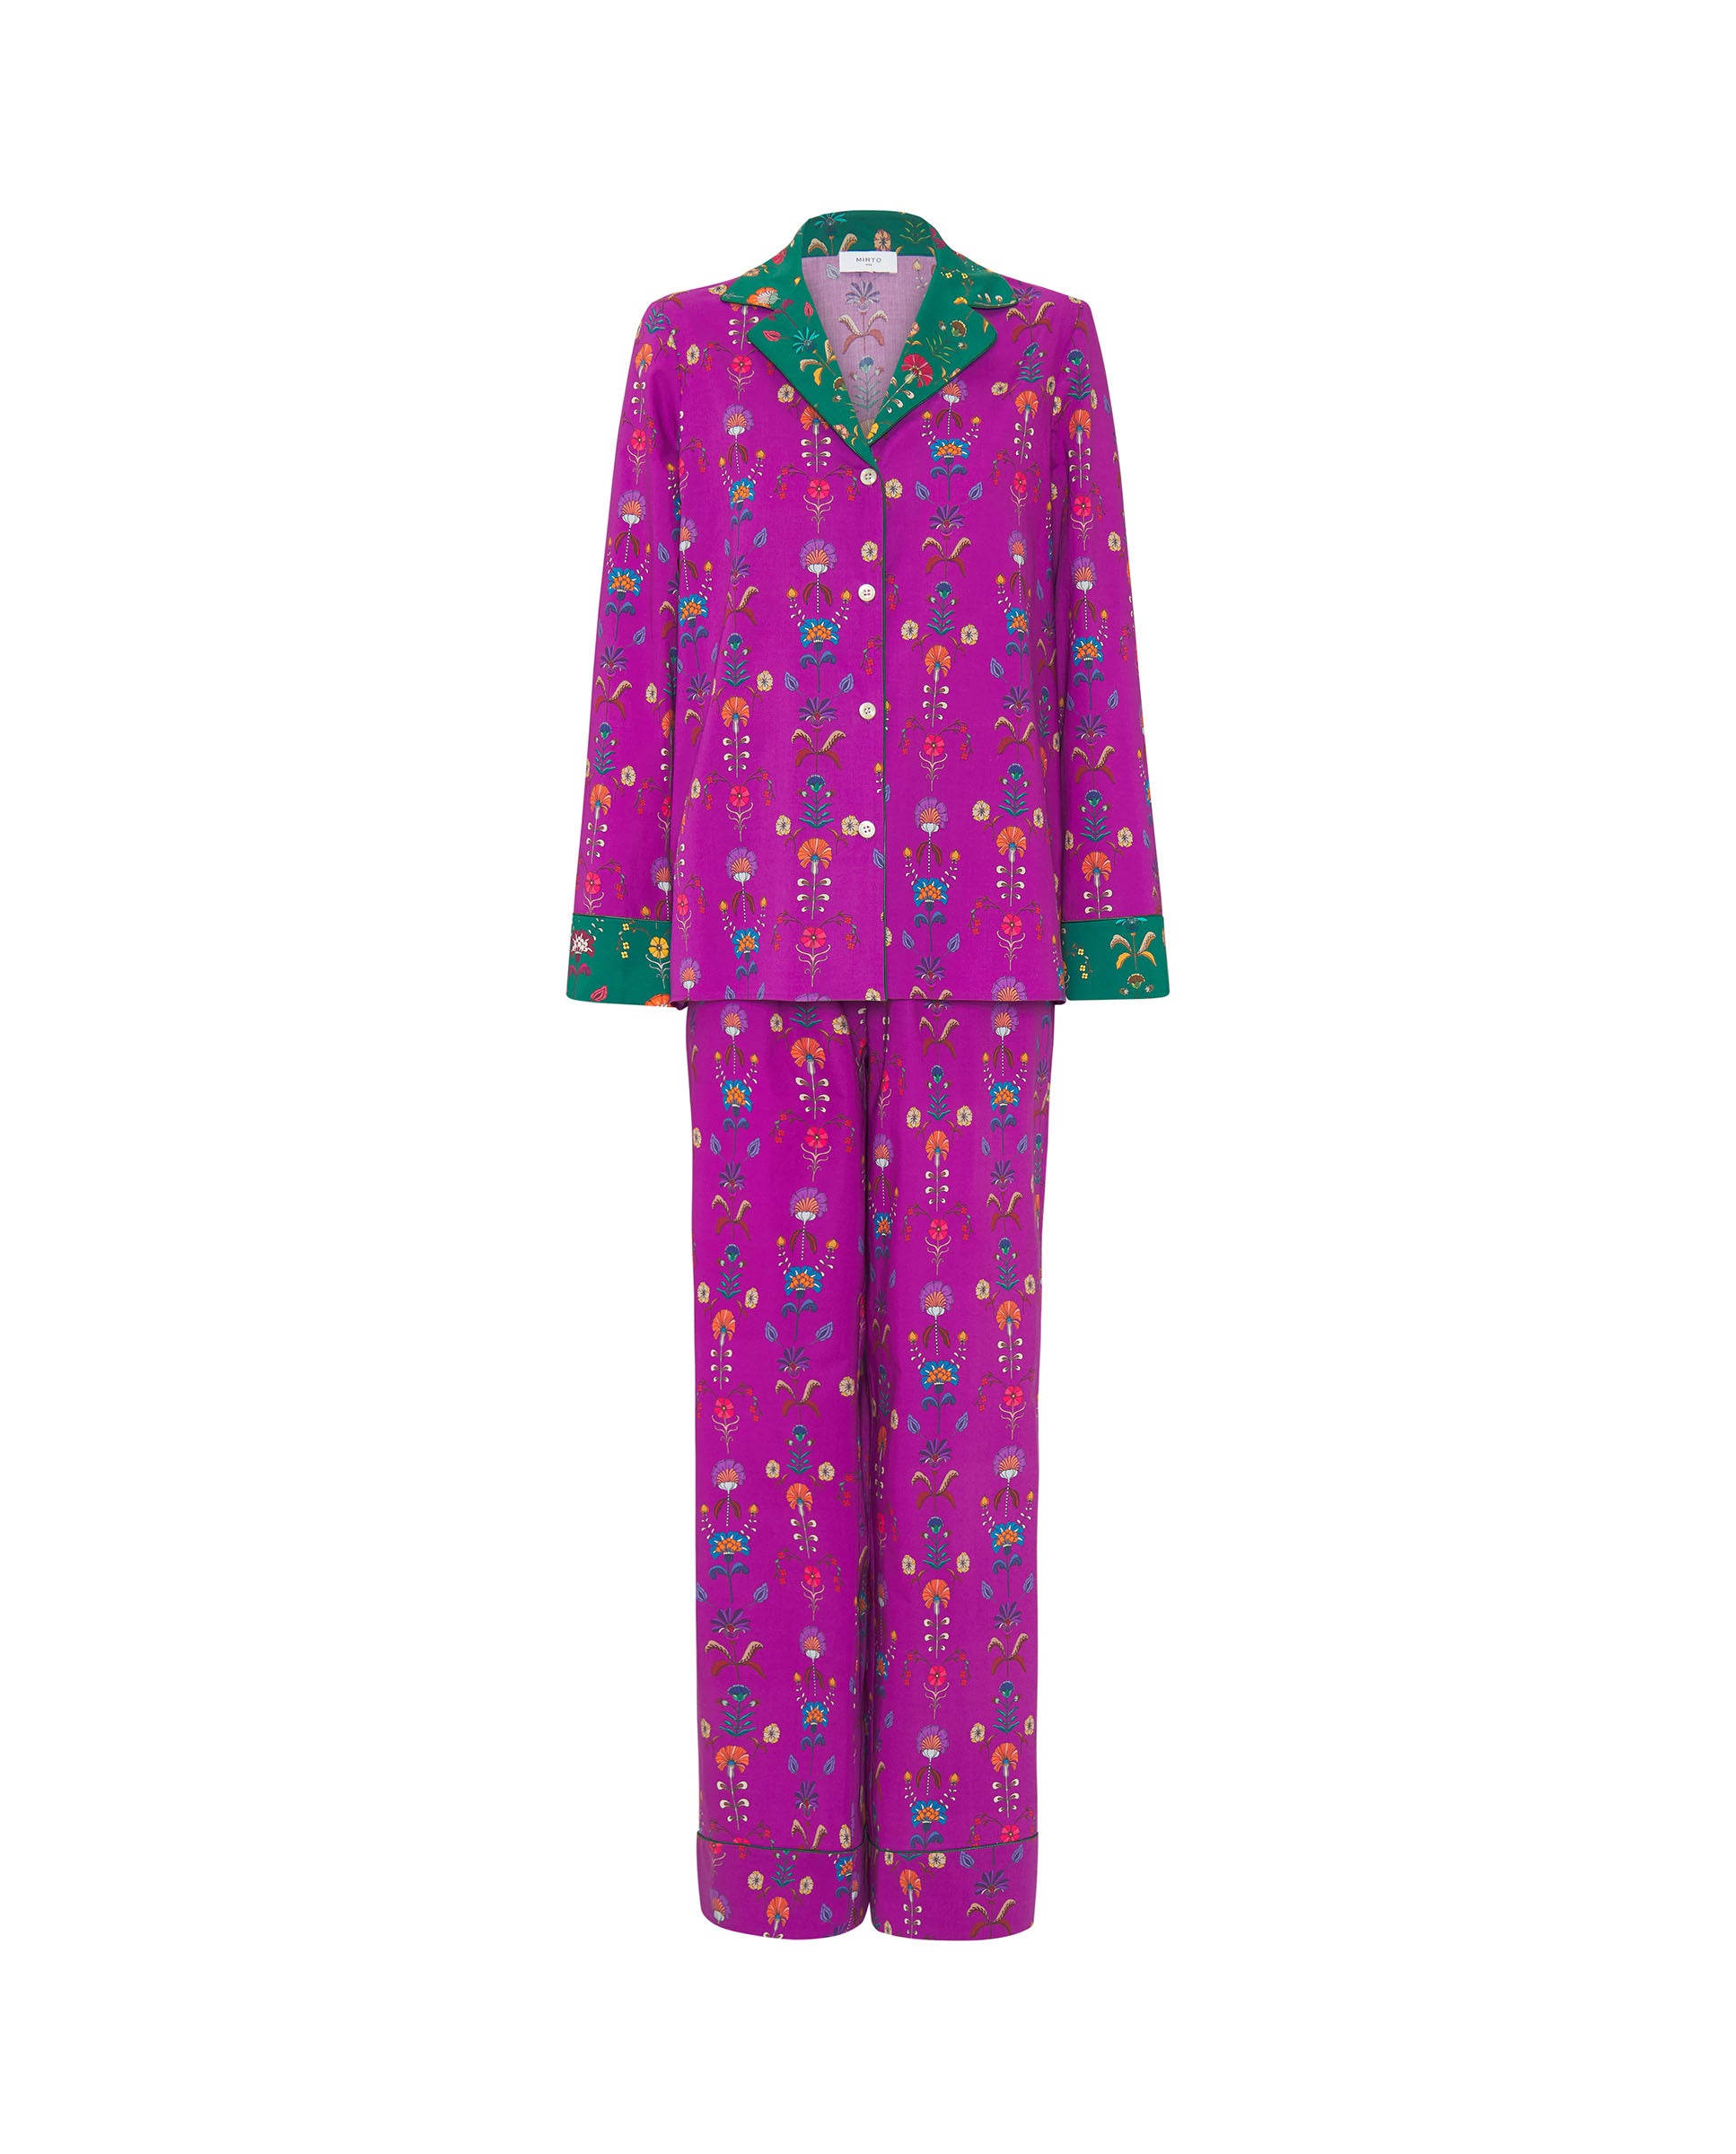 Pijama algodón estampado floral morado by MIRTO